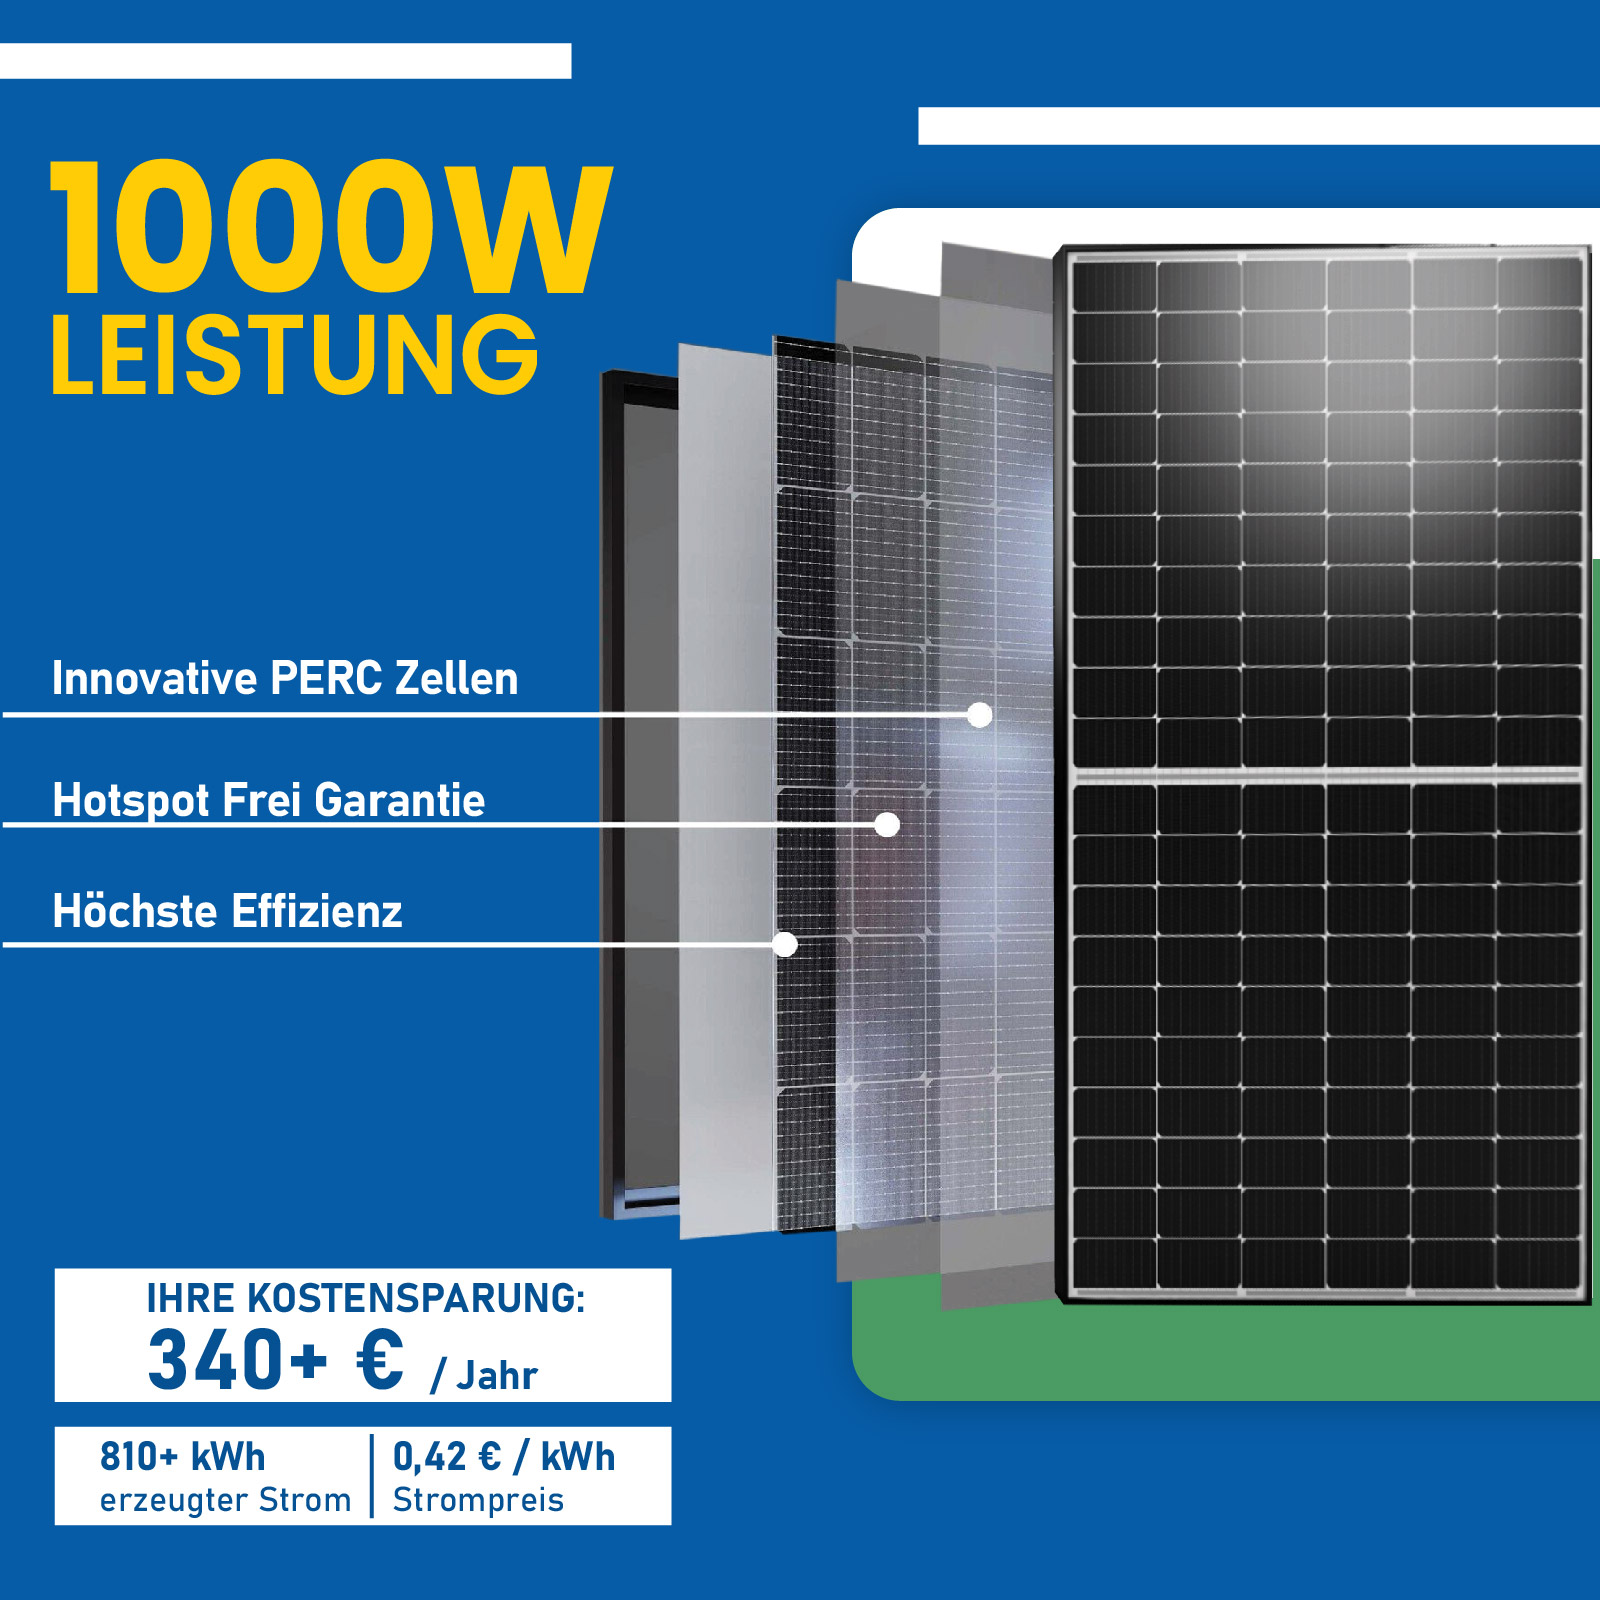 1000W Balkonkraftwerk Komplettset mit 500W Solarmodule, NEP 800W WIFI  Wechselrichter und 10m Schuckostecker - epp shop